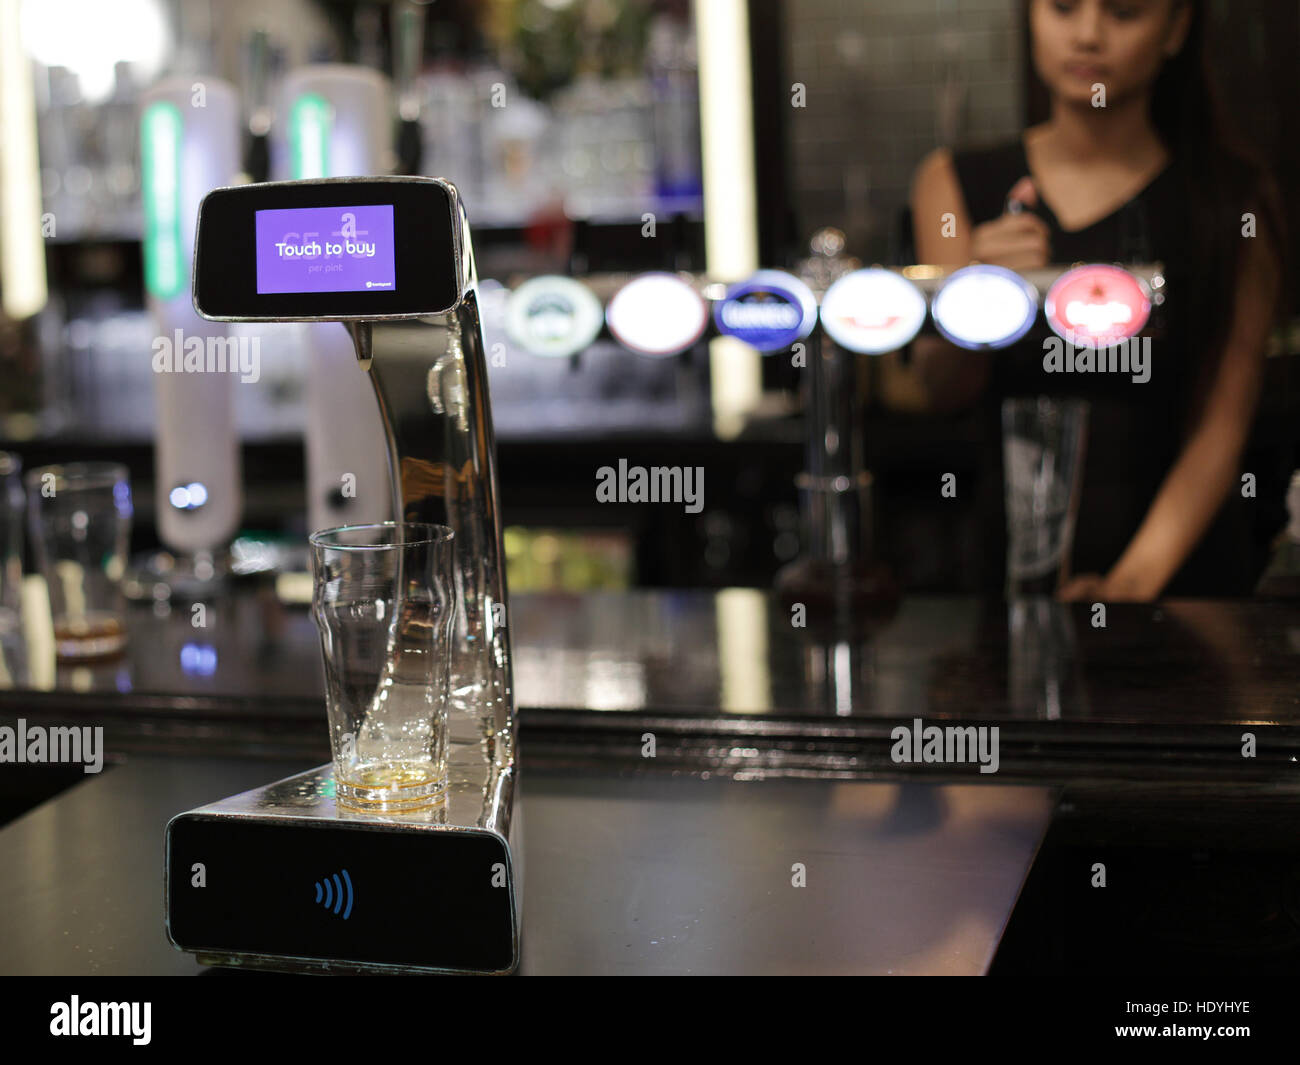 Si svolge una dimostrazione della prima pompa di birra indipendente e senza contatto sviluppata da Barclaycard per aiutare a tagliare le code di bar la sera, presso l'Henry's Cafe and Bar di Piccadilly, Londra. Foto Stock